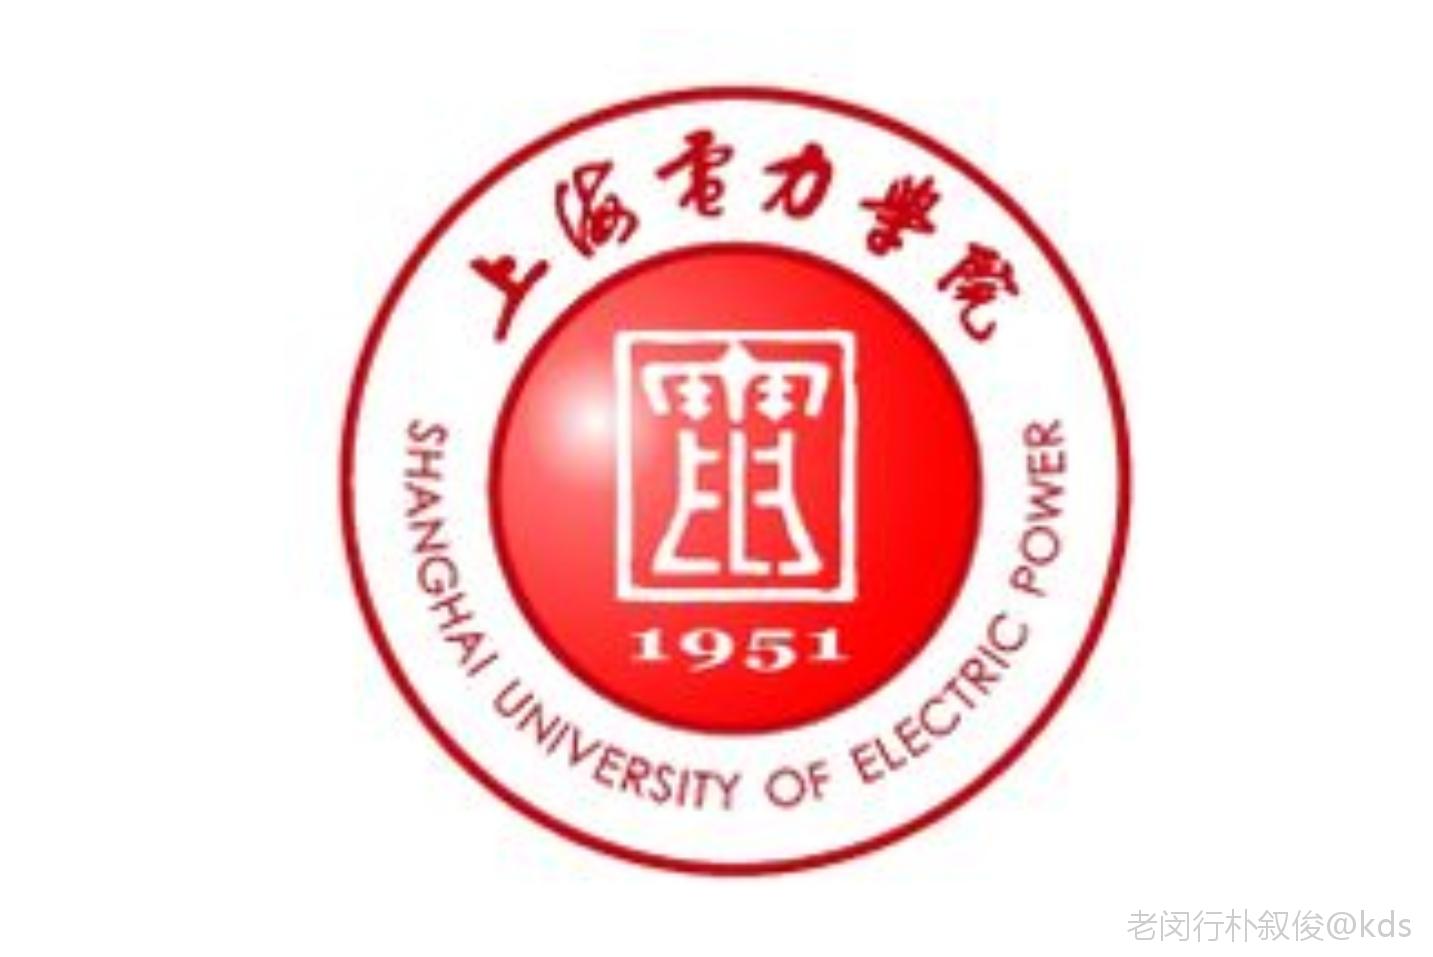 恭喜上海电力学院有博士点了,今年开始可以招博士生啦!